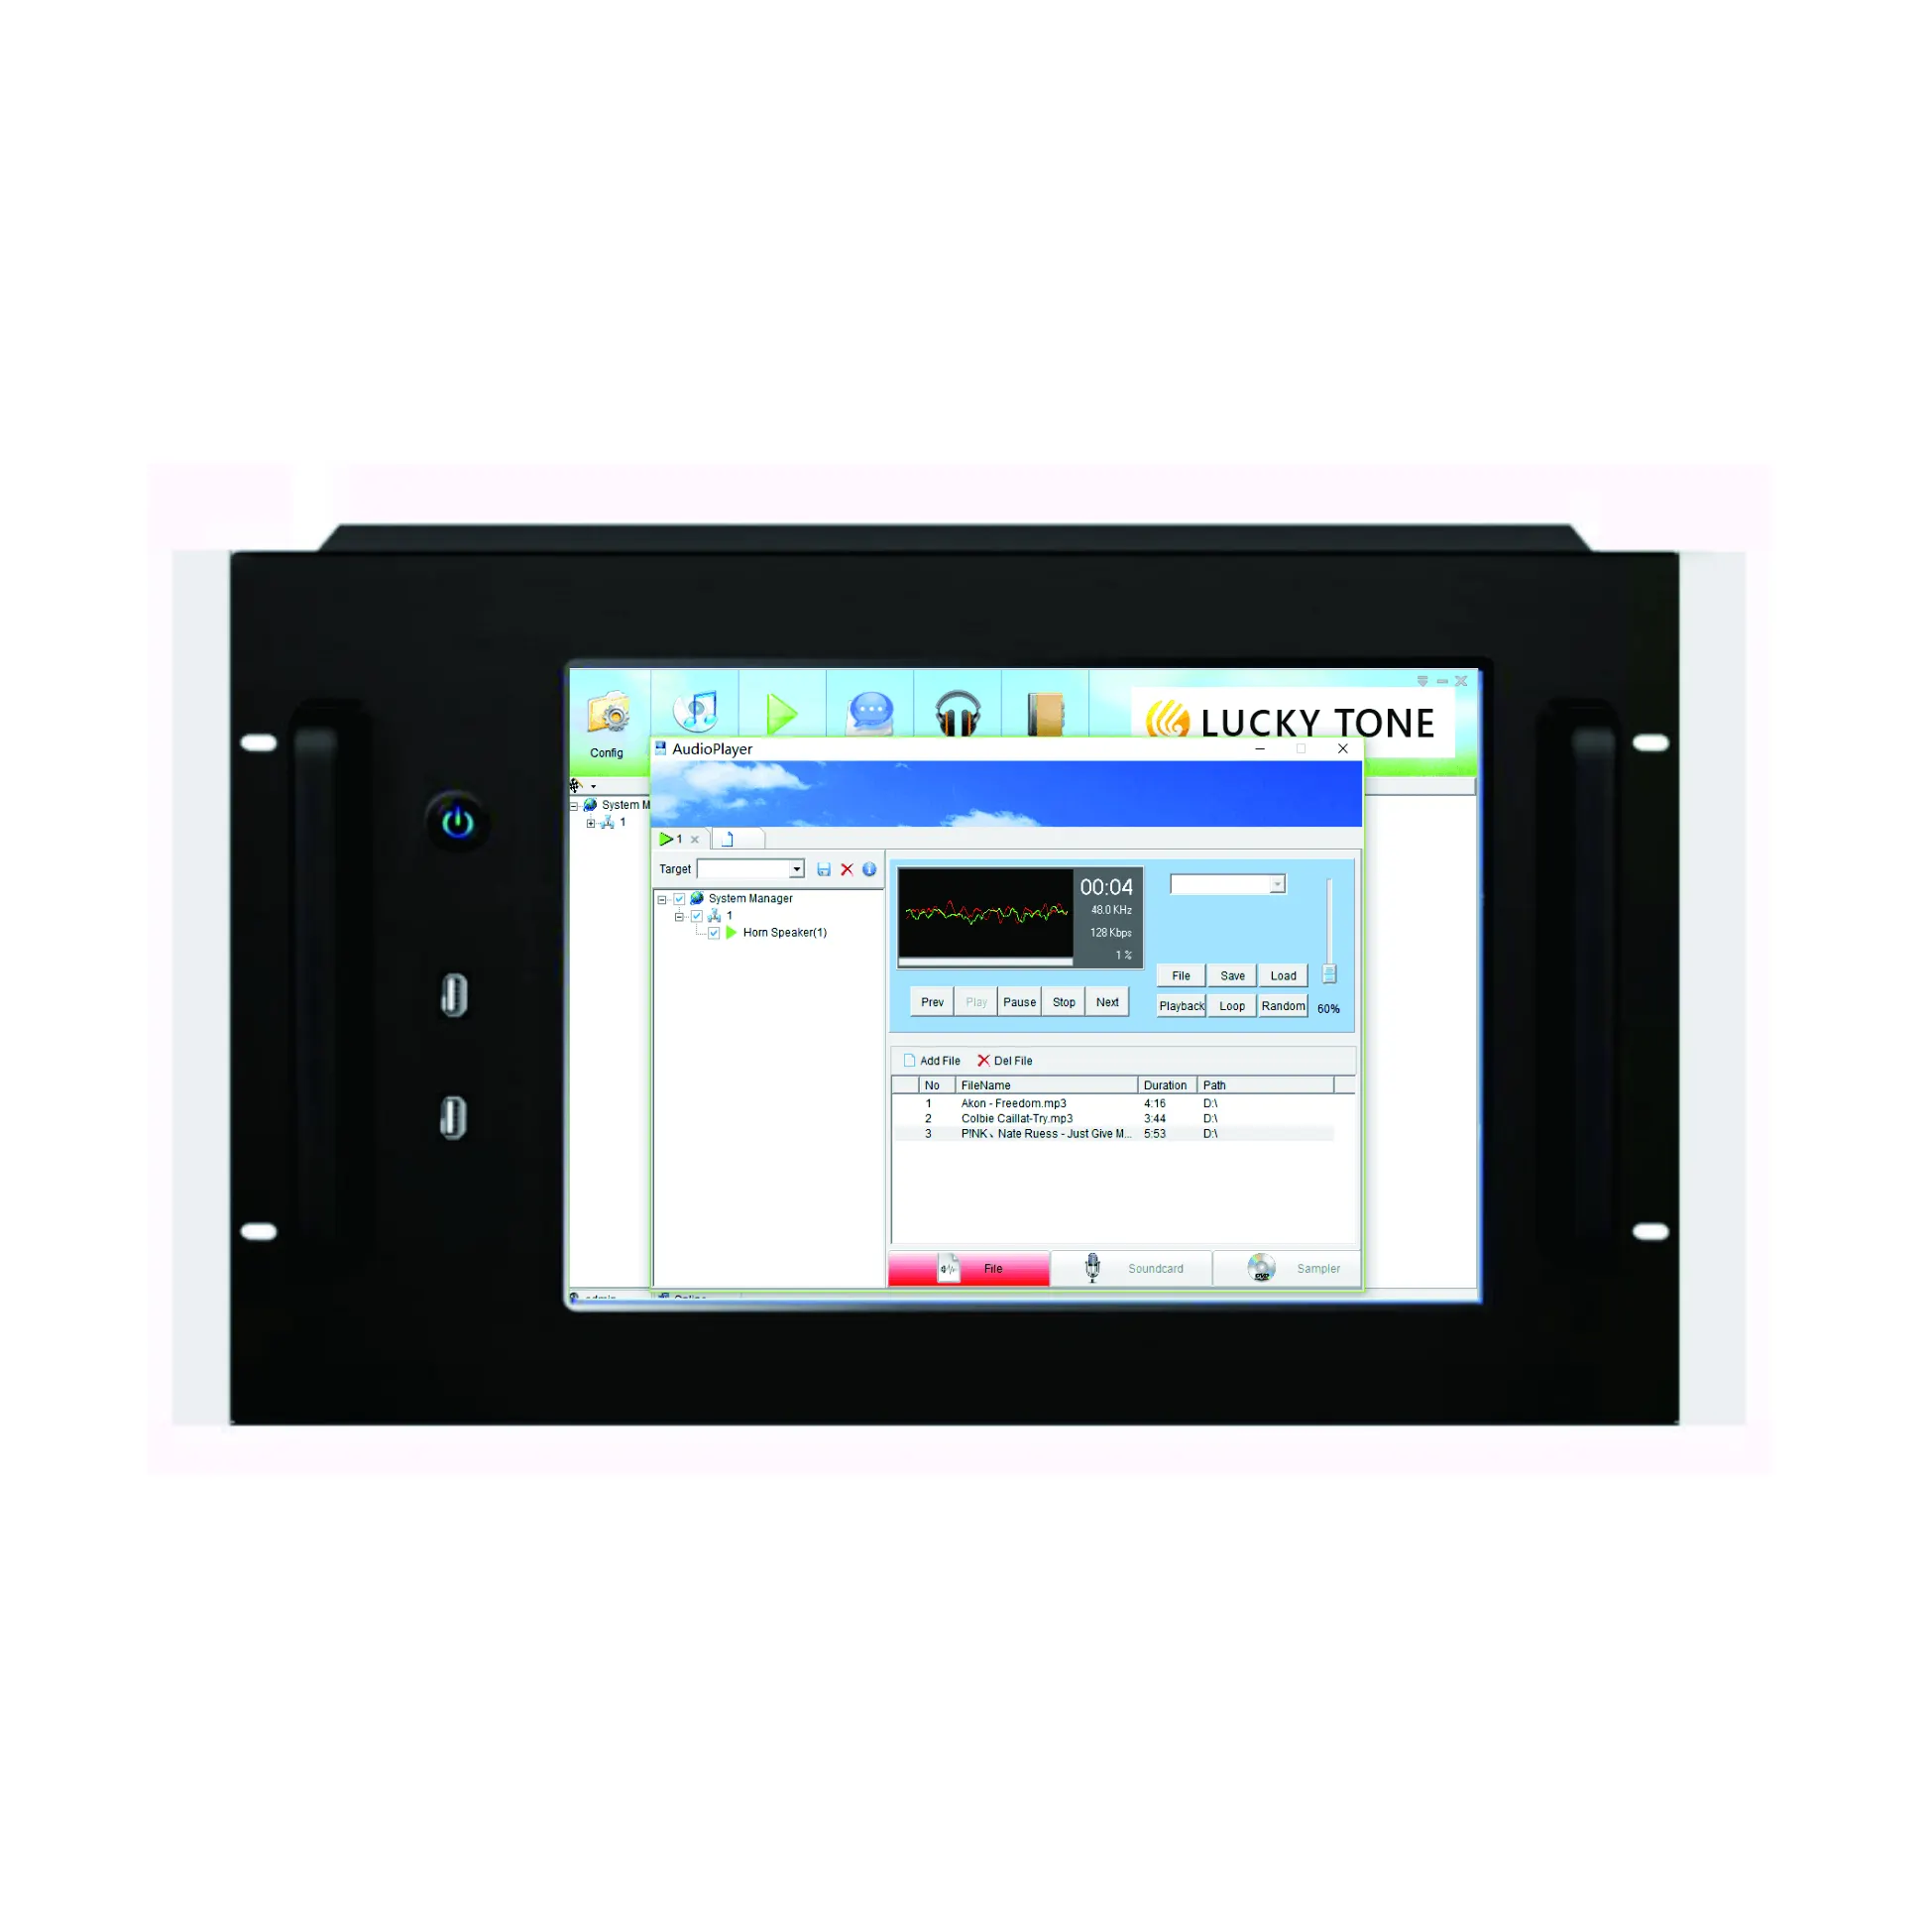 Nuovo di vendita caldo di prodotti E-SMR 17 IP PA altoparlante sistema di gestione con display lcd touch screen per telecamera ip di rete